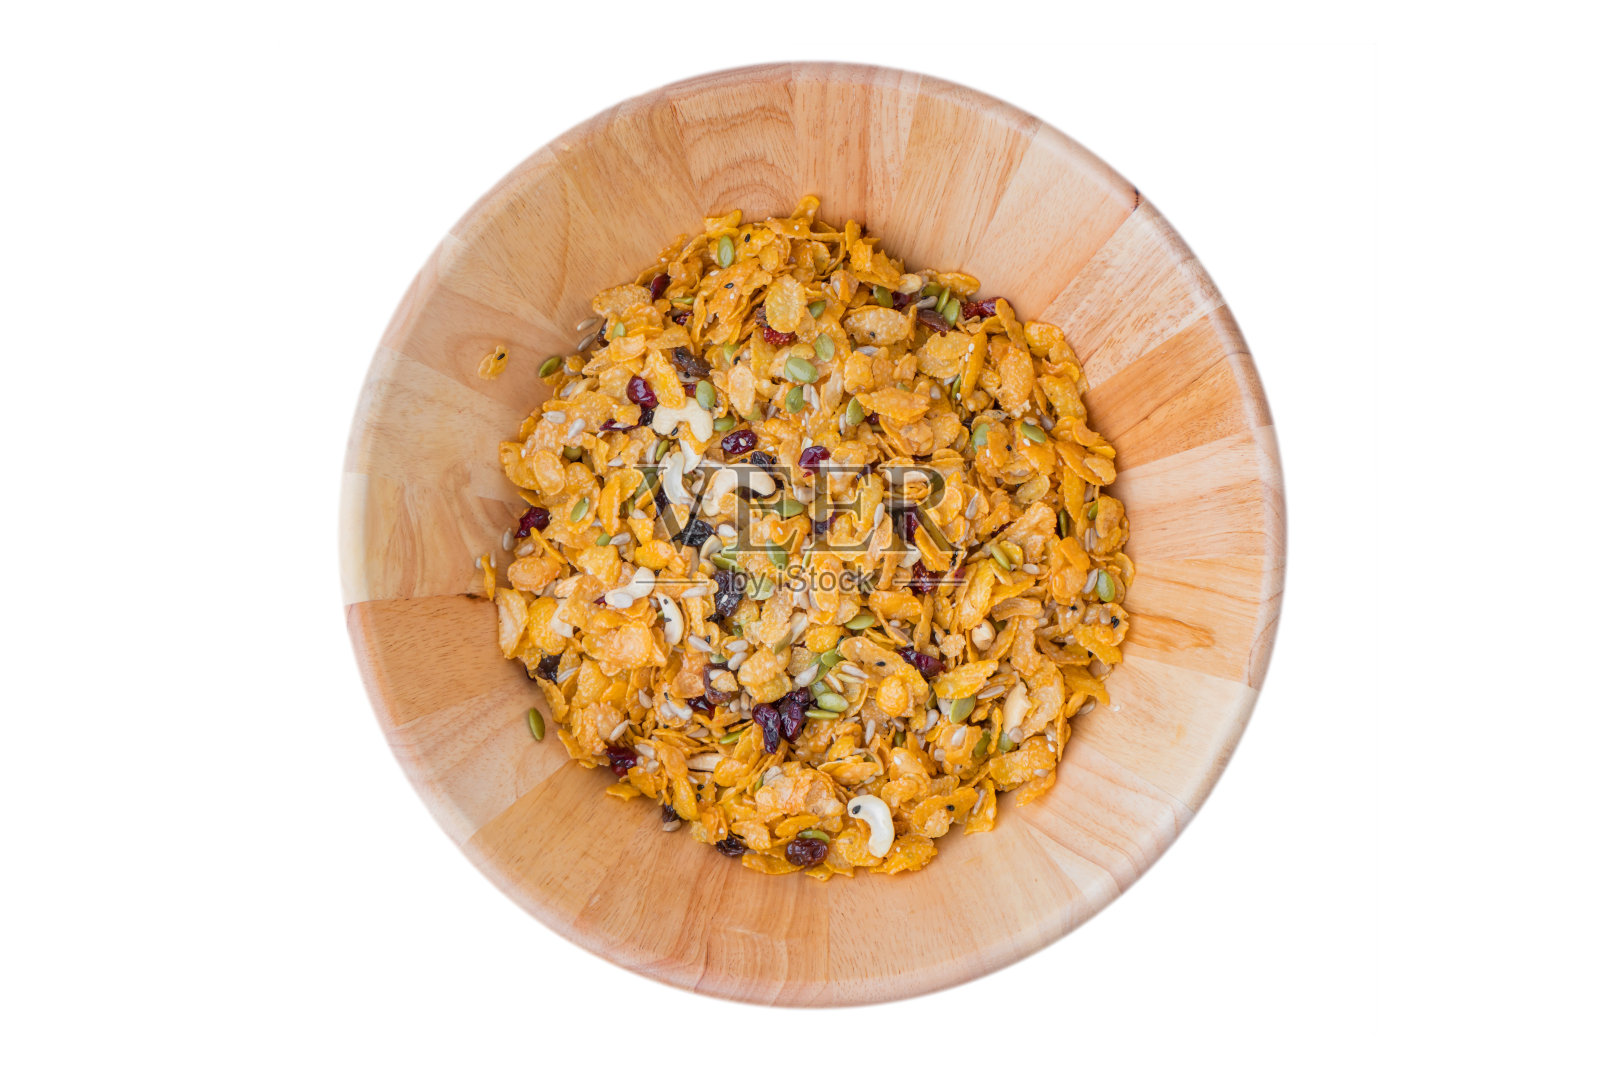 腰果，杏仁，南瓜籽和葵花籽成分自制谷物玉米片的健康杂粮食品照片摄影图片